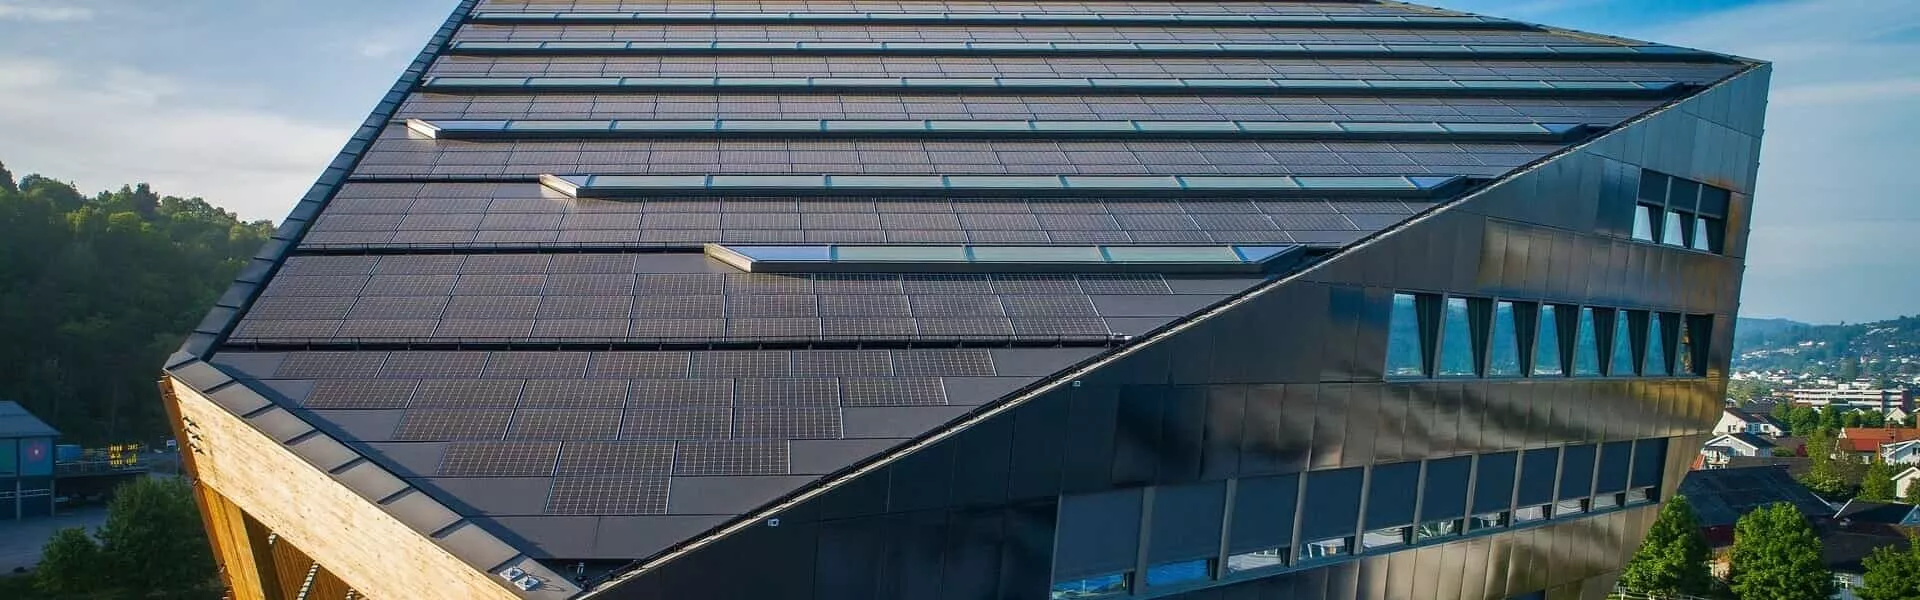 L'ultimo progetto Maxeon è riuscito a creare una norma per gli edifici ad energia positiva decarbonizzando il settore.